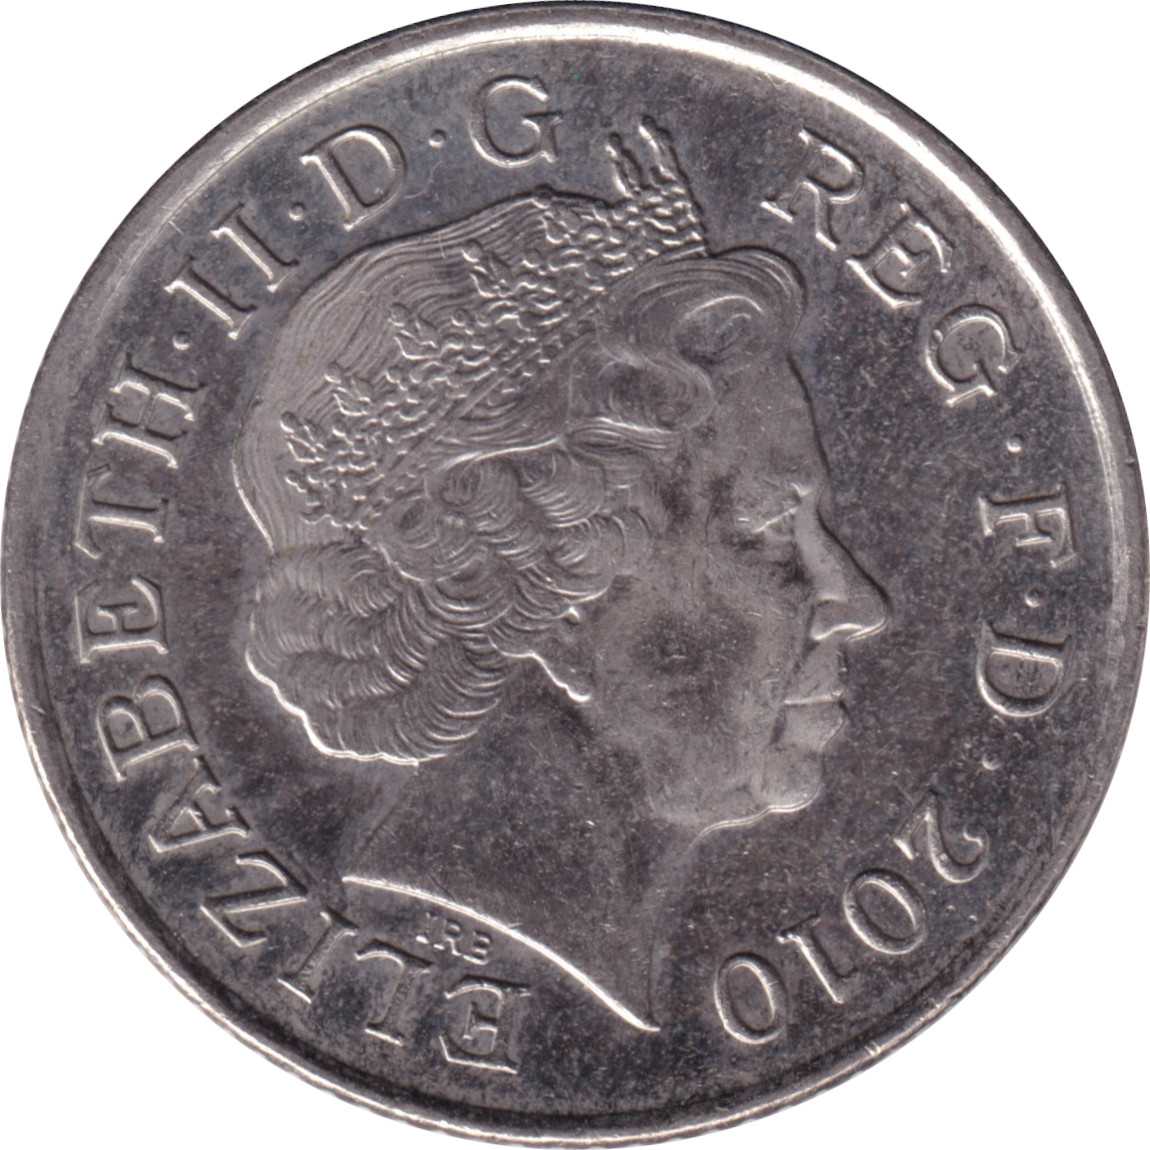 10 pence - Elizabeth II - Tête agée - Blason